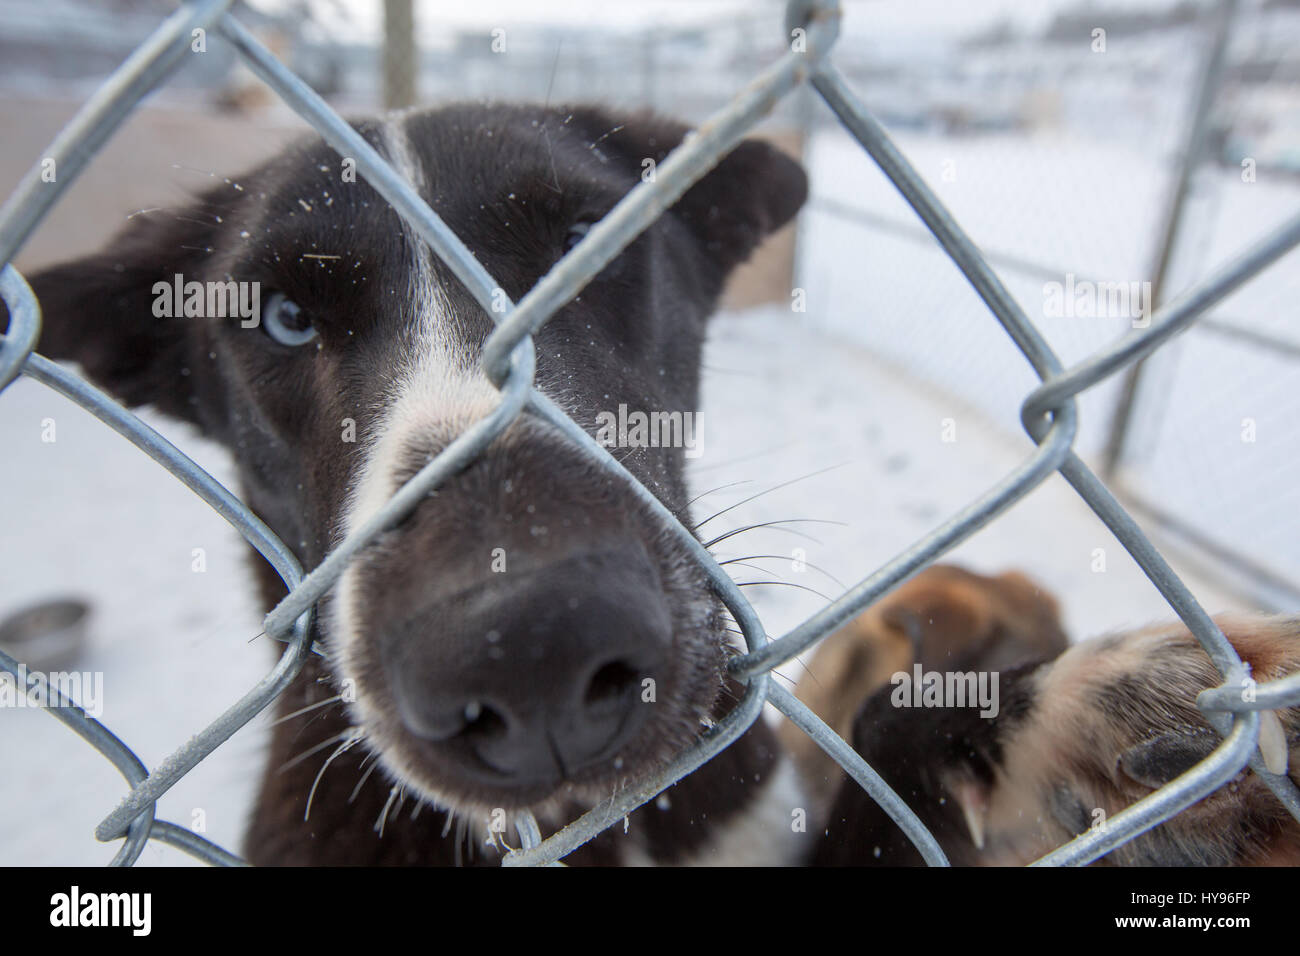 Niedlicher schwarz-weißer Schlittenhund mit blauen Augen und Schneeflocken im Gesicht, der durch einen Maschendrahtzaun in die Kamera blickt und seine Nase durchsticht Stockfoto